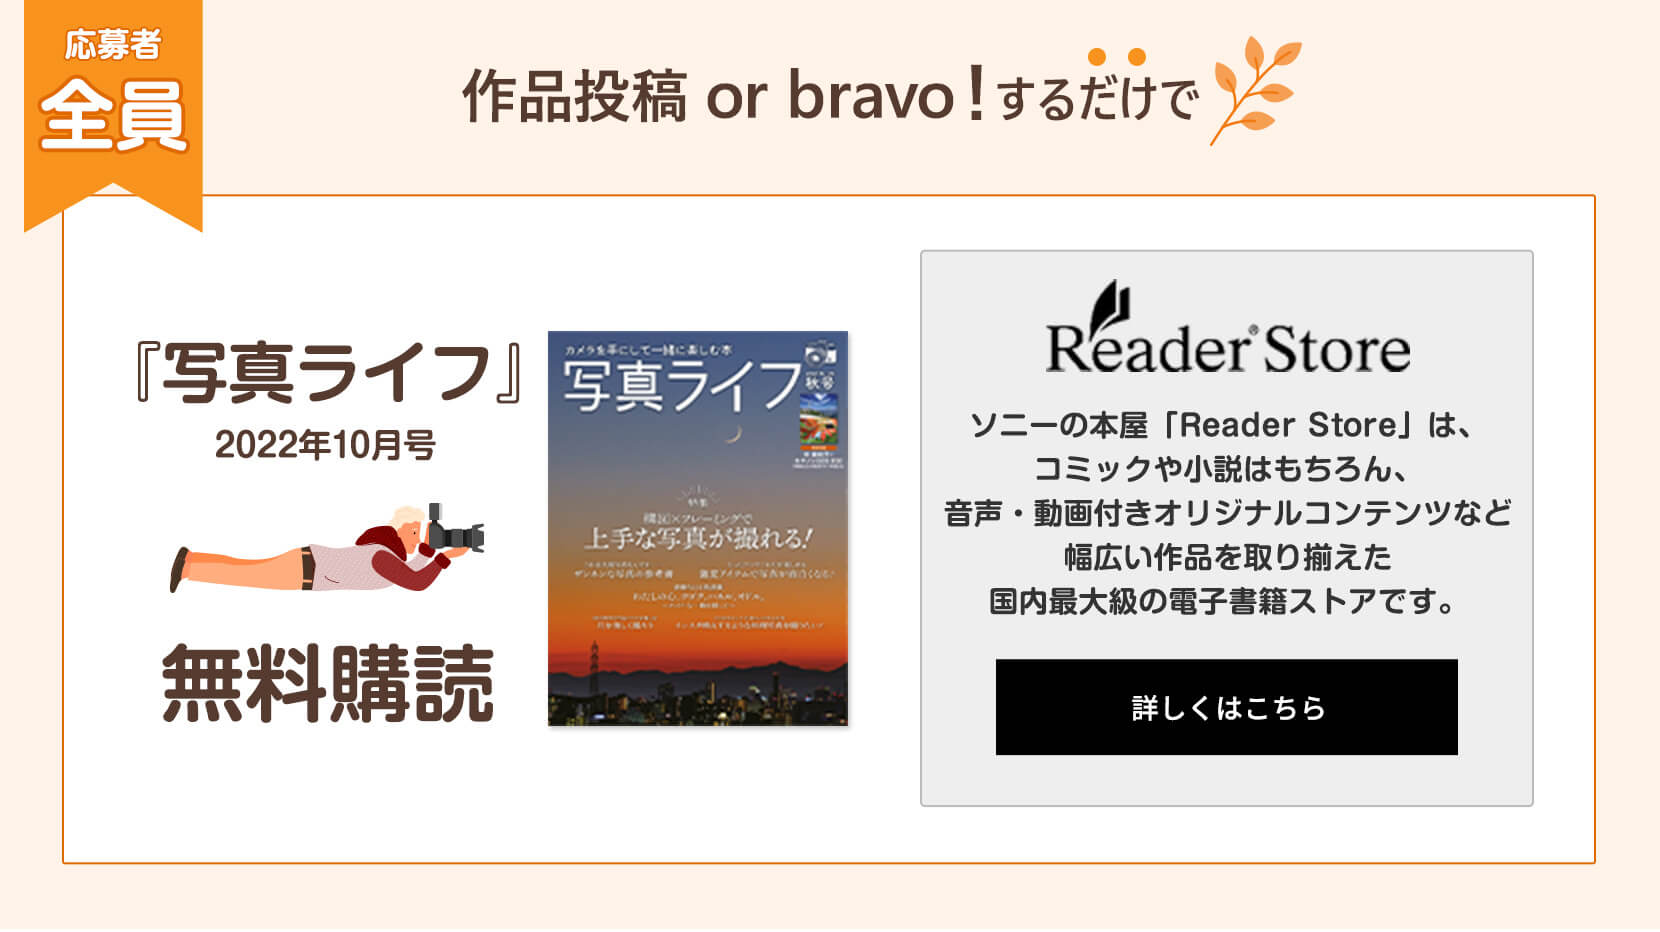 期間中に作品投稿 or bravo!した方全員に「Reader Store」の『写真ライフ(2022年10月号)』無料購読をプレゼント